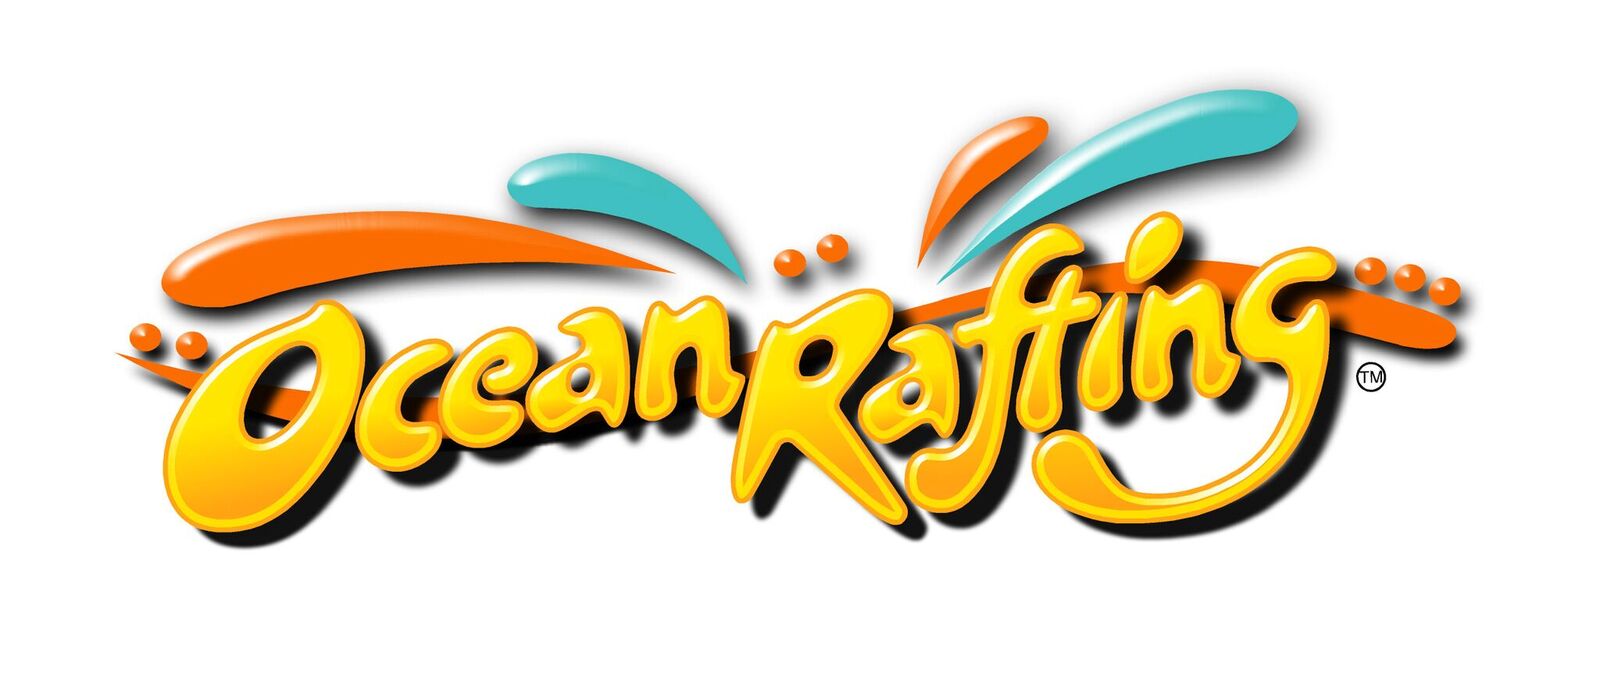 Ocean Safari / Ocean Rafting 